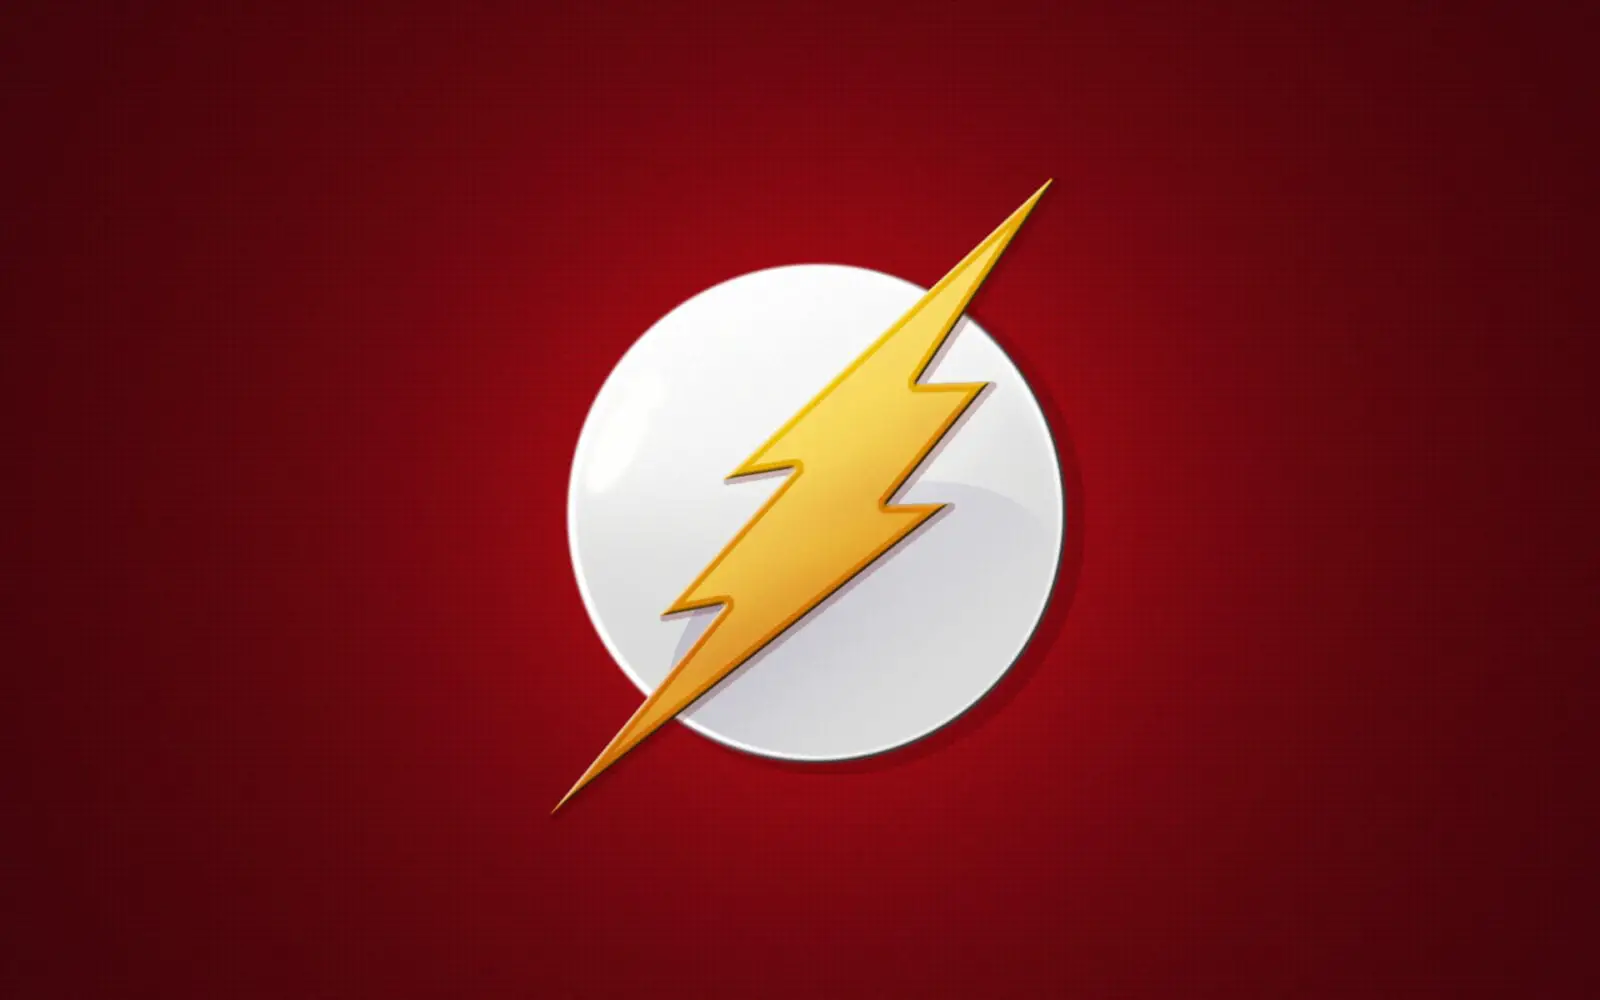 THE FLASH | Trailer mostra a transformação de Barry Allen no herói